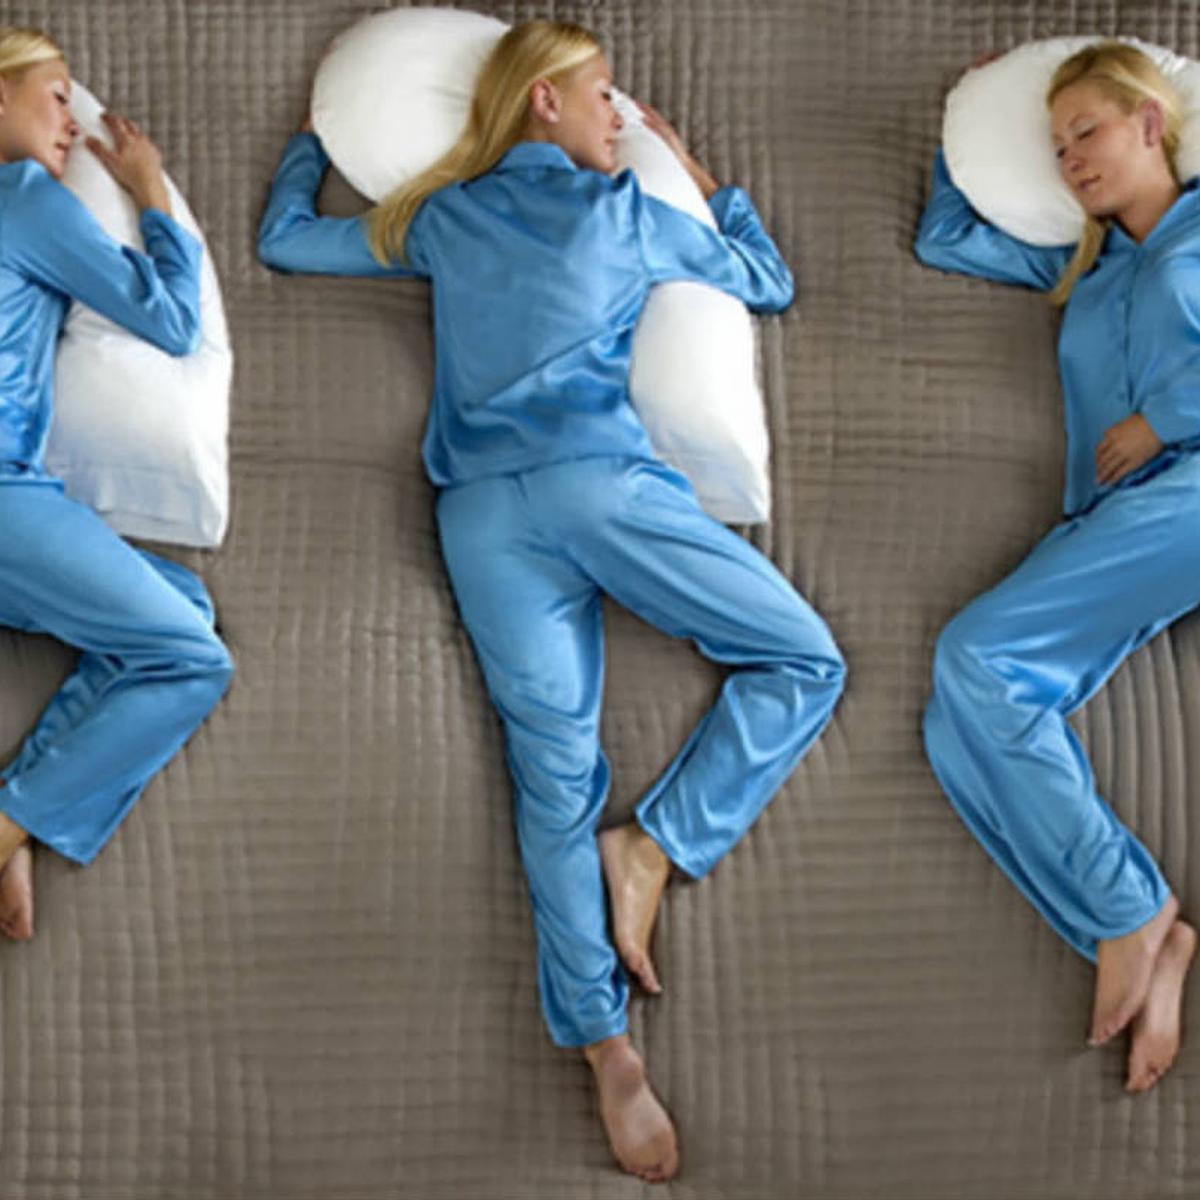 Posisi tidur yang baik untuk organ pernapasan adalah dengan miring ke arah